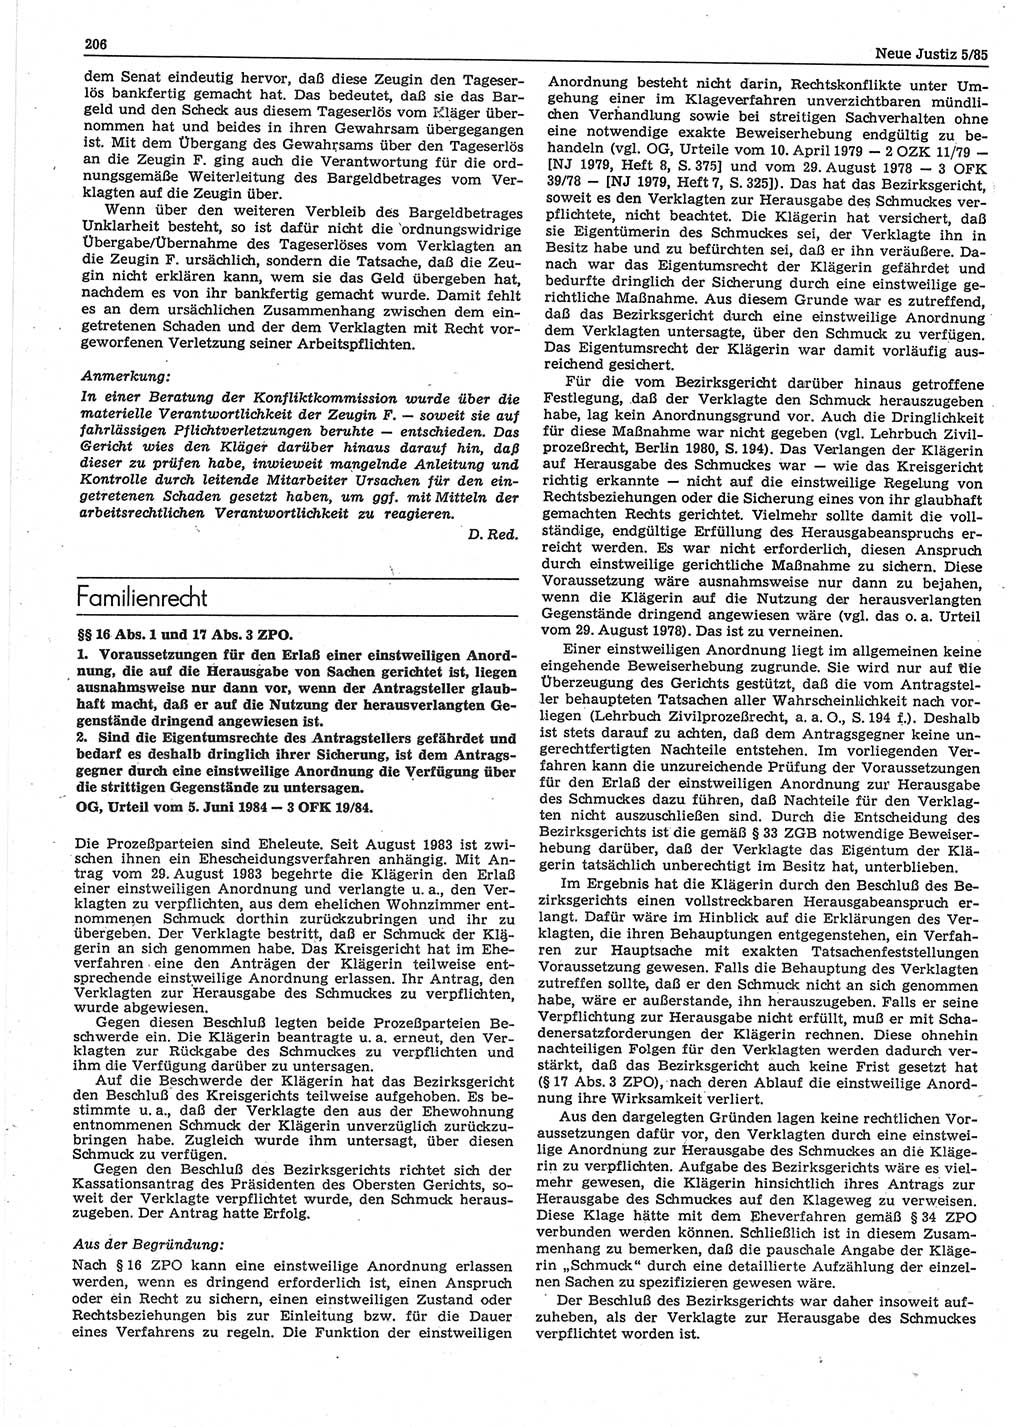 Neue Justiz (NJ), Zeitschrift für sozialistisches Recht und Gesetzlichkeit [Deutsche Demokratische Republik (DDR)], 39. Jahrgang 1985, Seite 206 (NJ DDR 1985, S. 206)